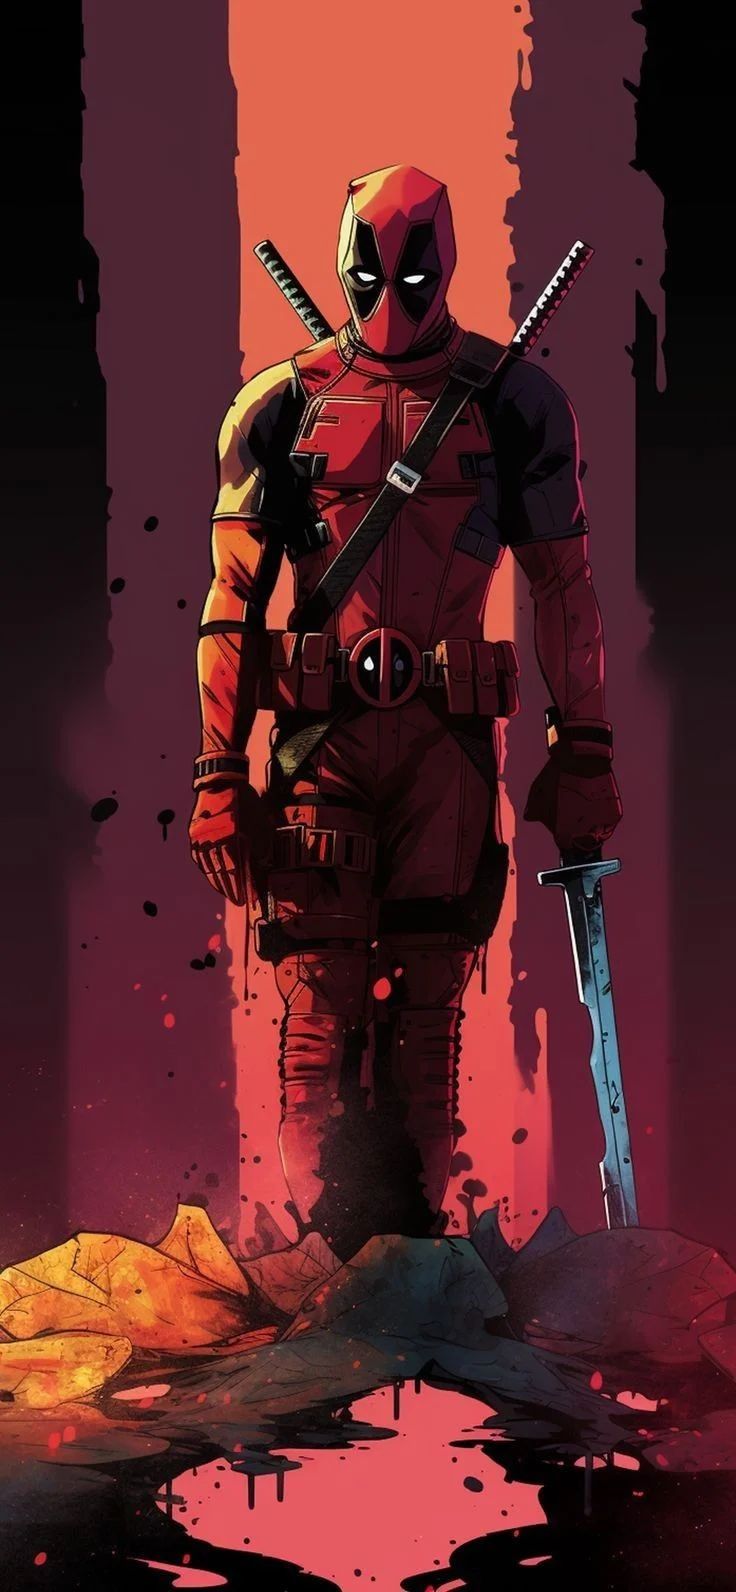 Avatar of Deadpool